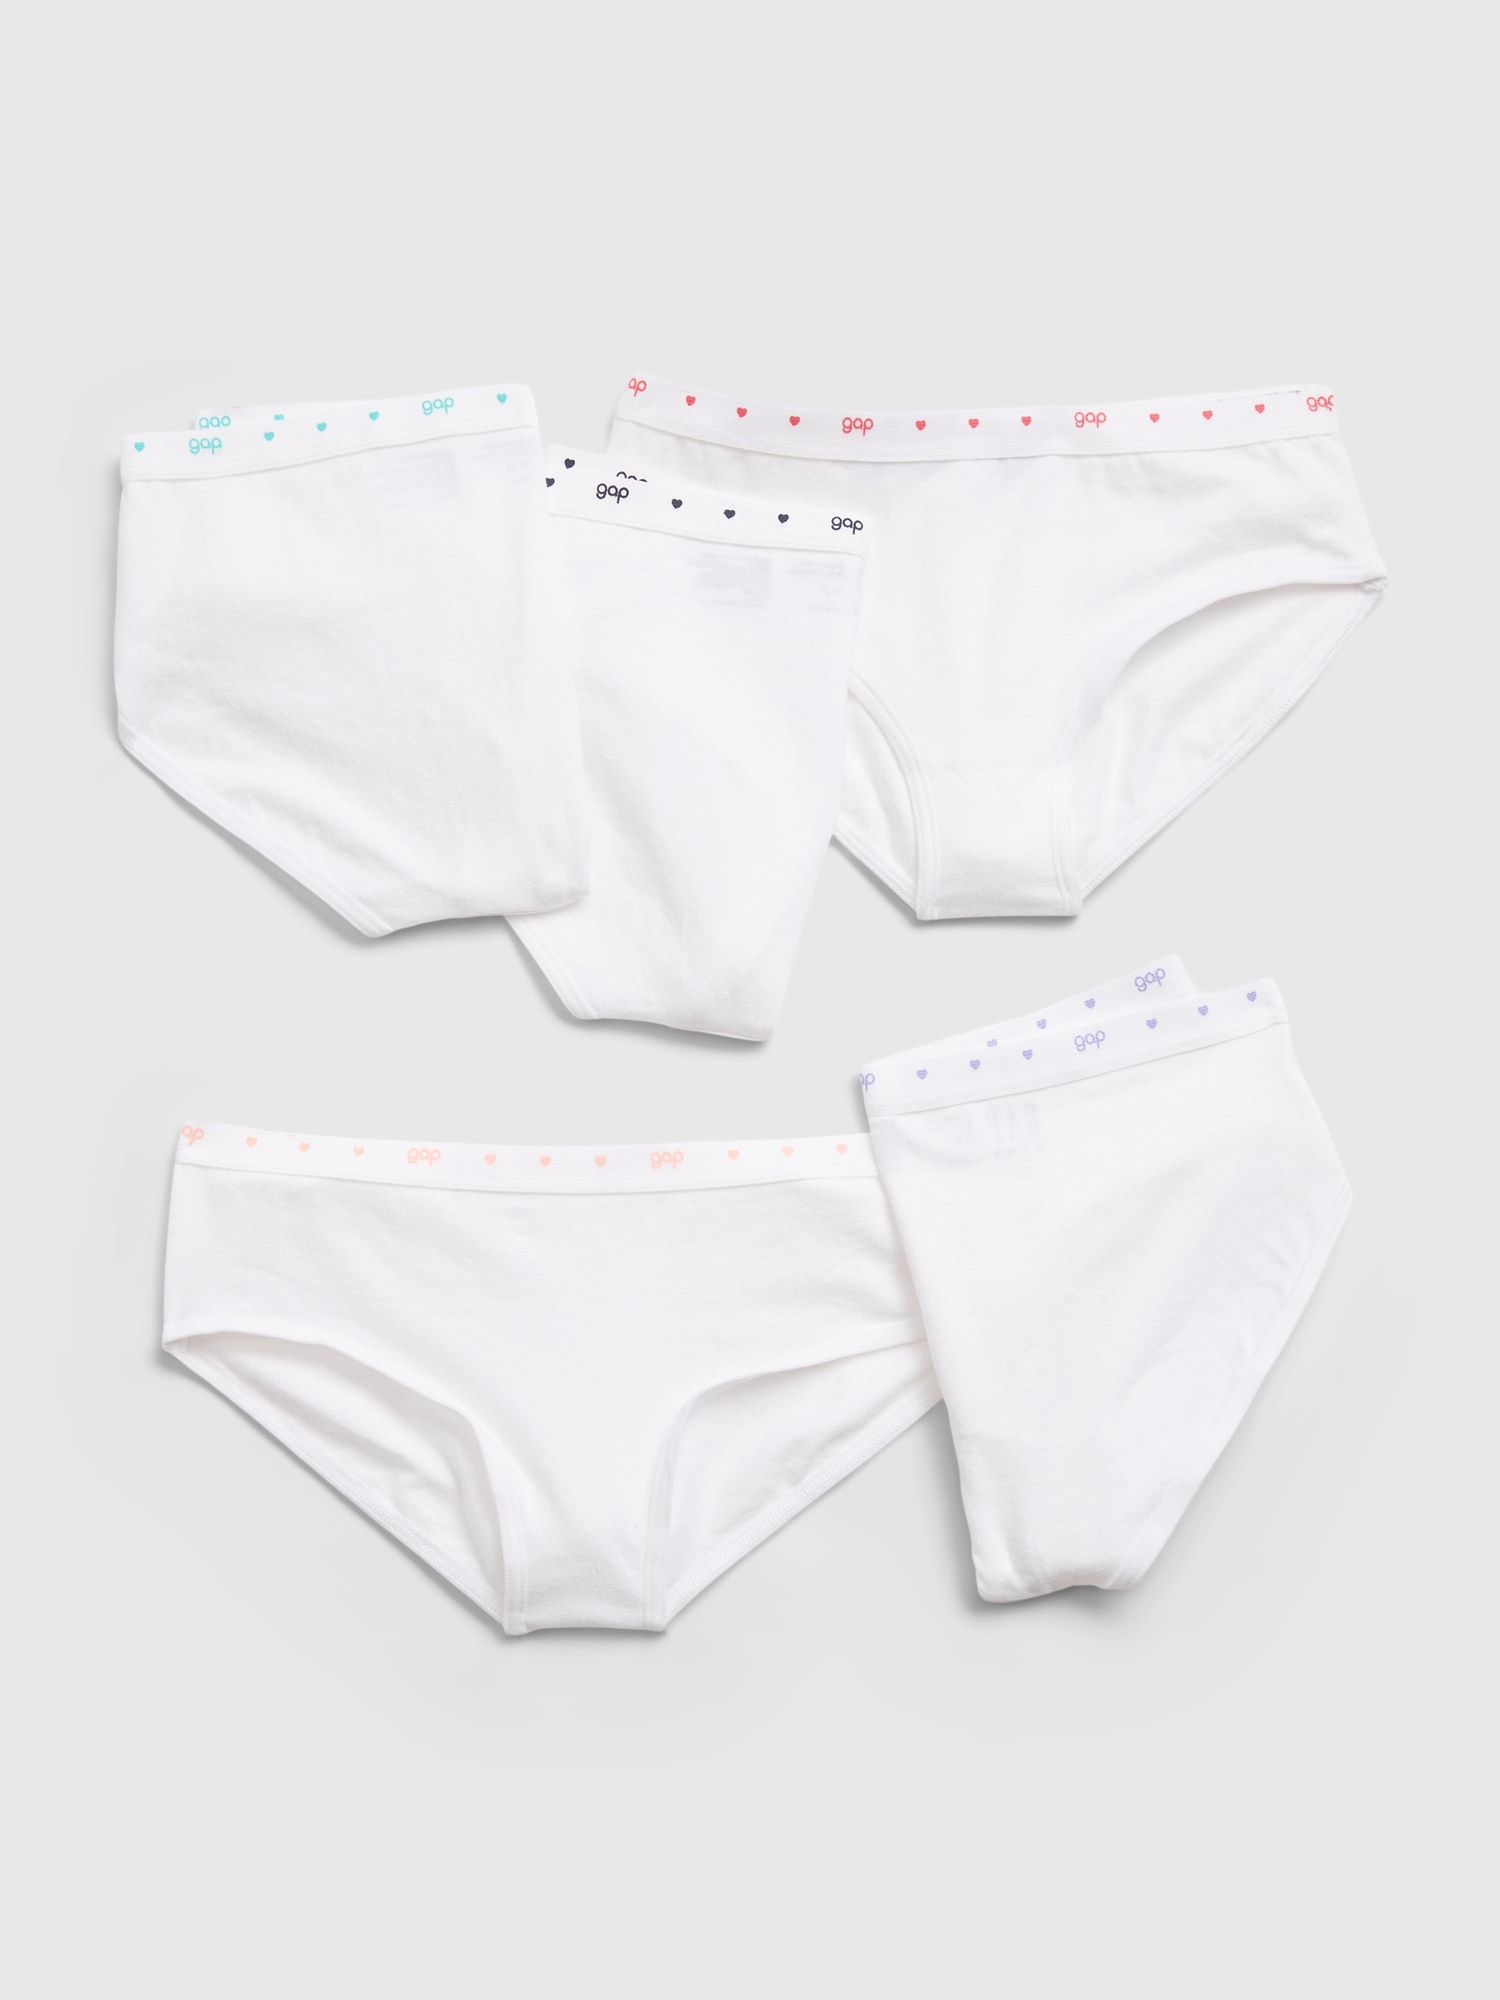 Pretty Girls Cotton Underwear Soft Shorts Kids Triangle Briefs